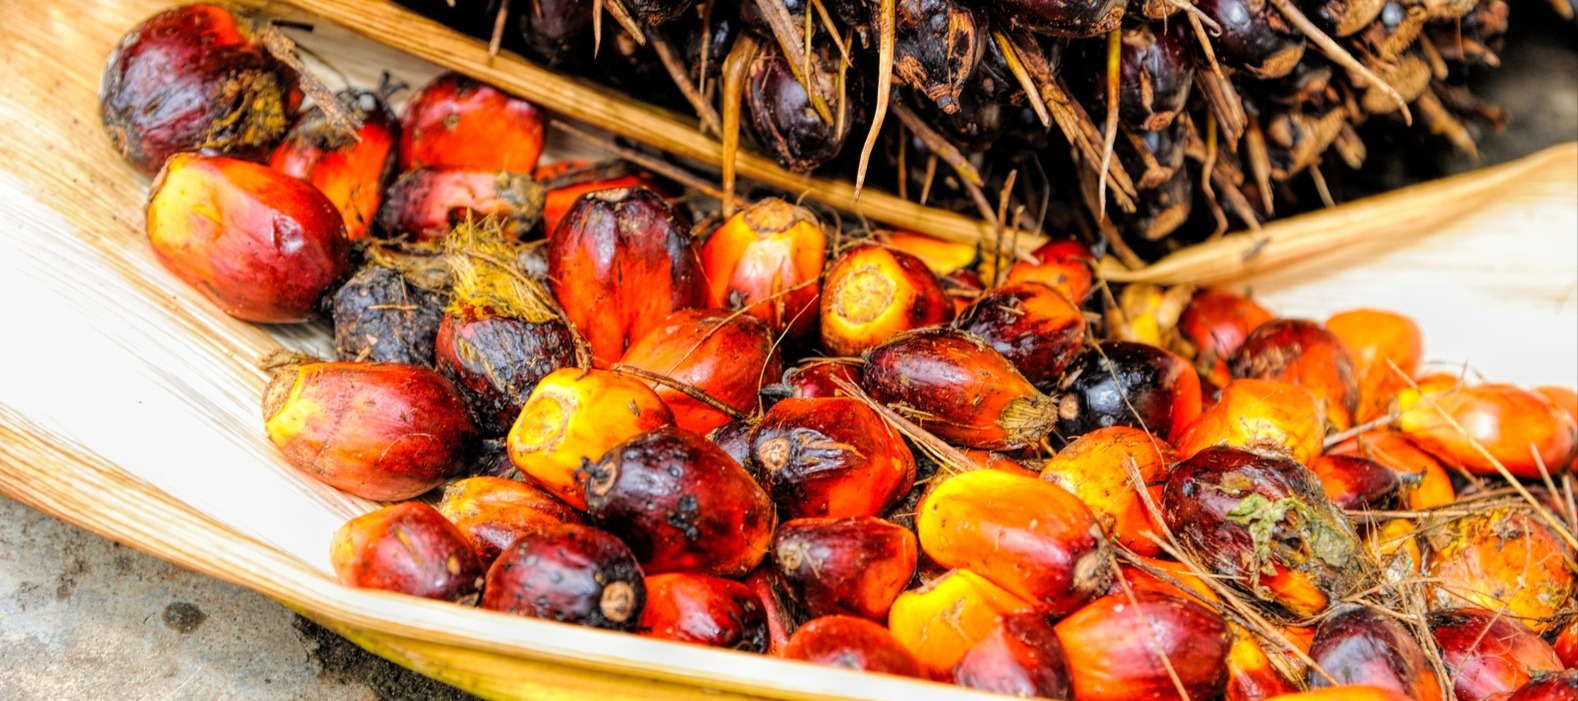 Фото новости: "Bloomberg: мировые поставки пальмового масла не смогут расти по-прежнему"